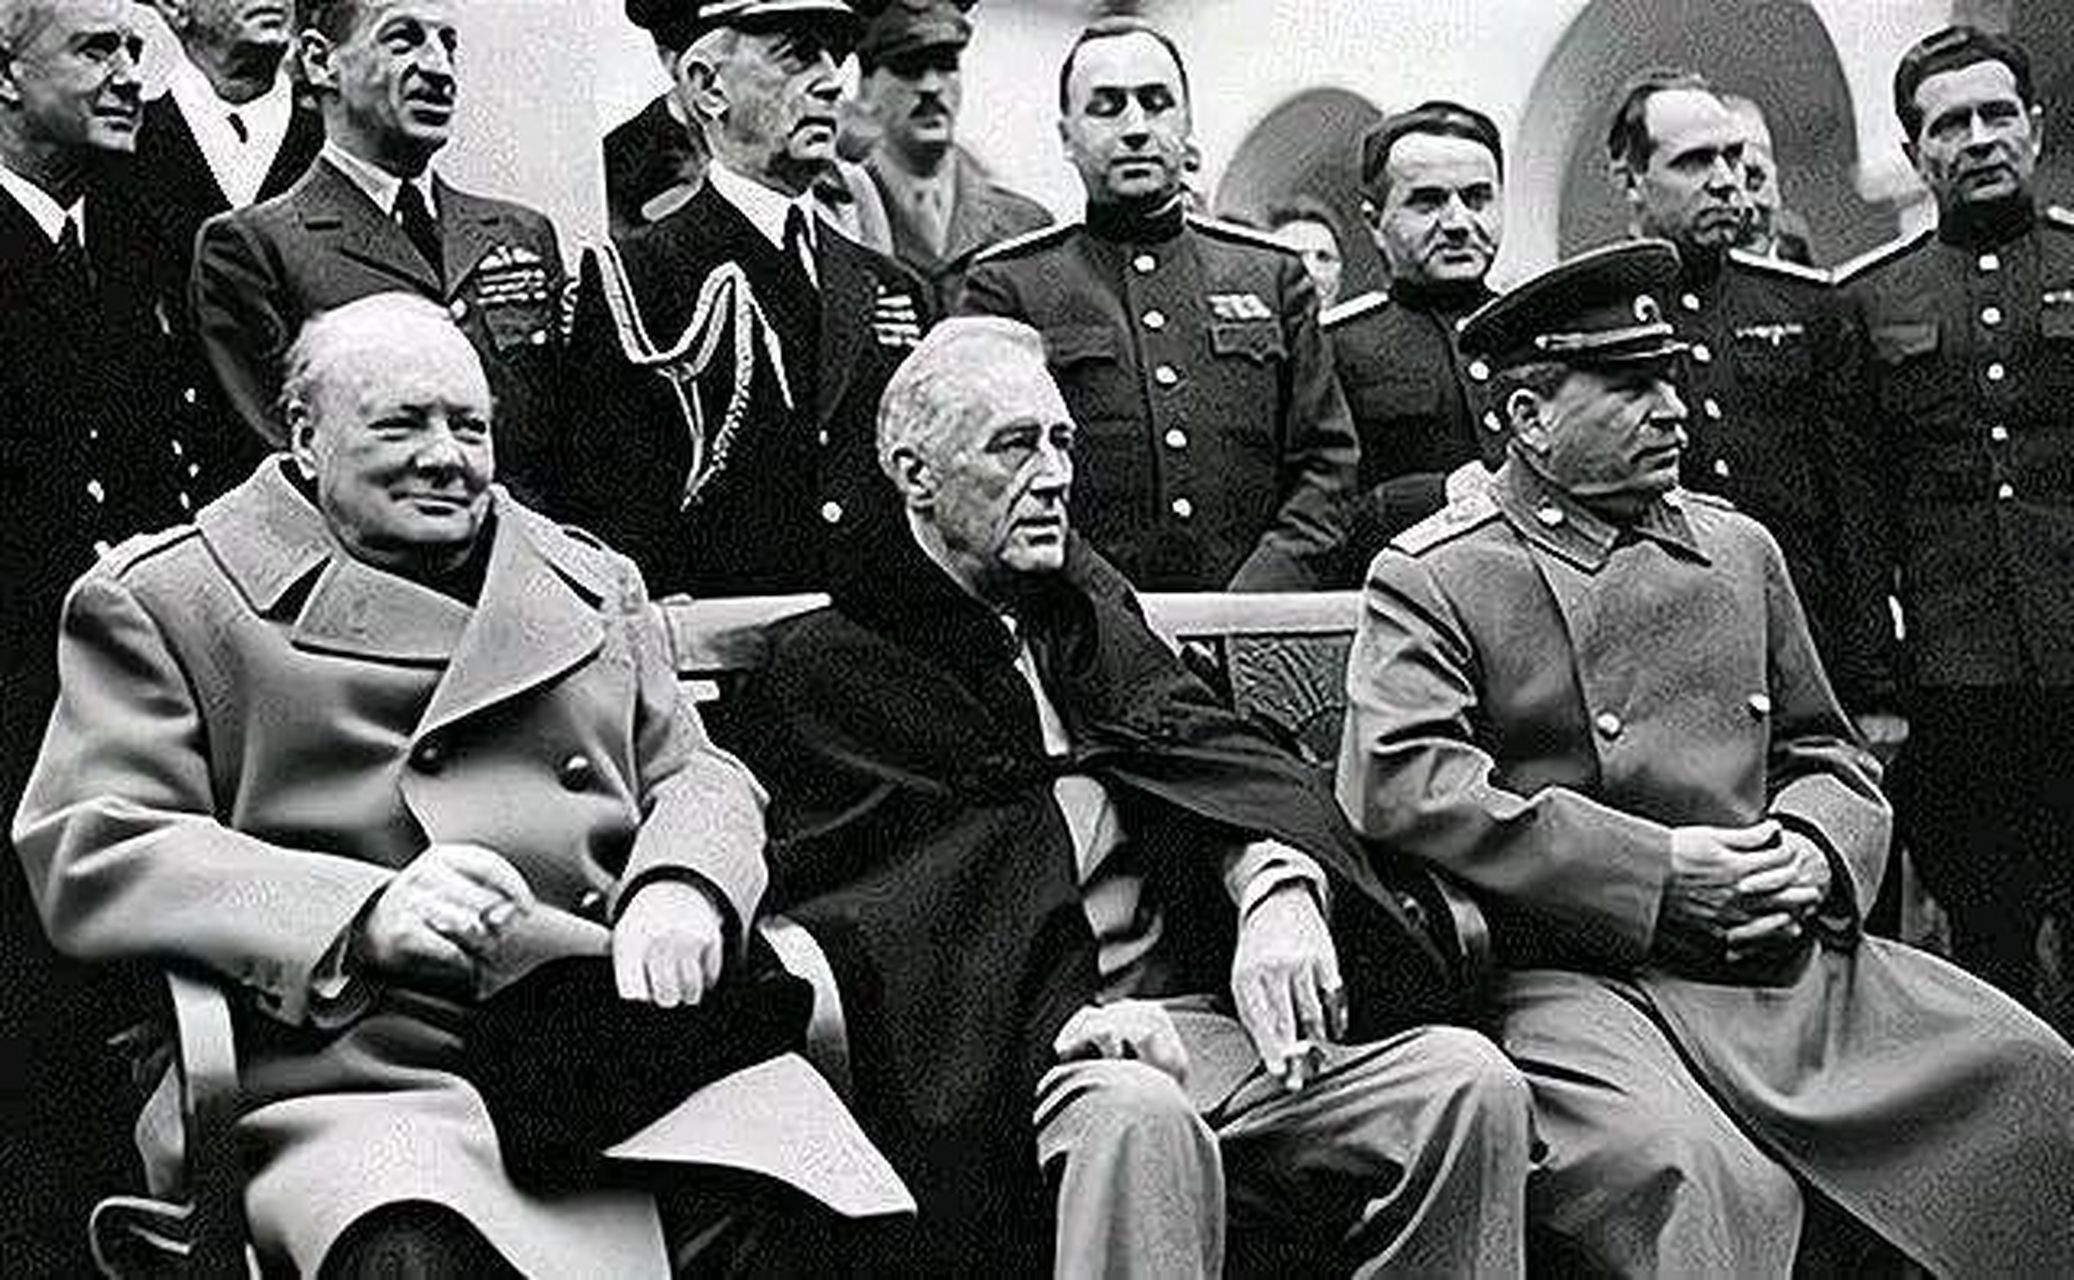 丘吉尔的裤子拉链开了  1943年11月的德黑兰会议,在讨论有关第二次